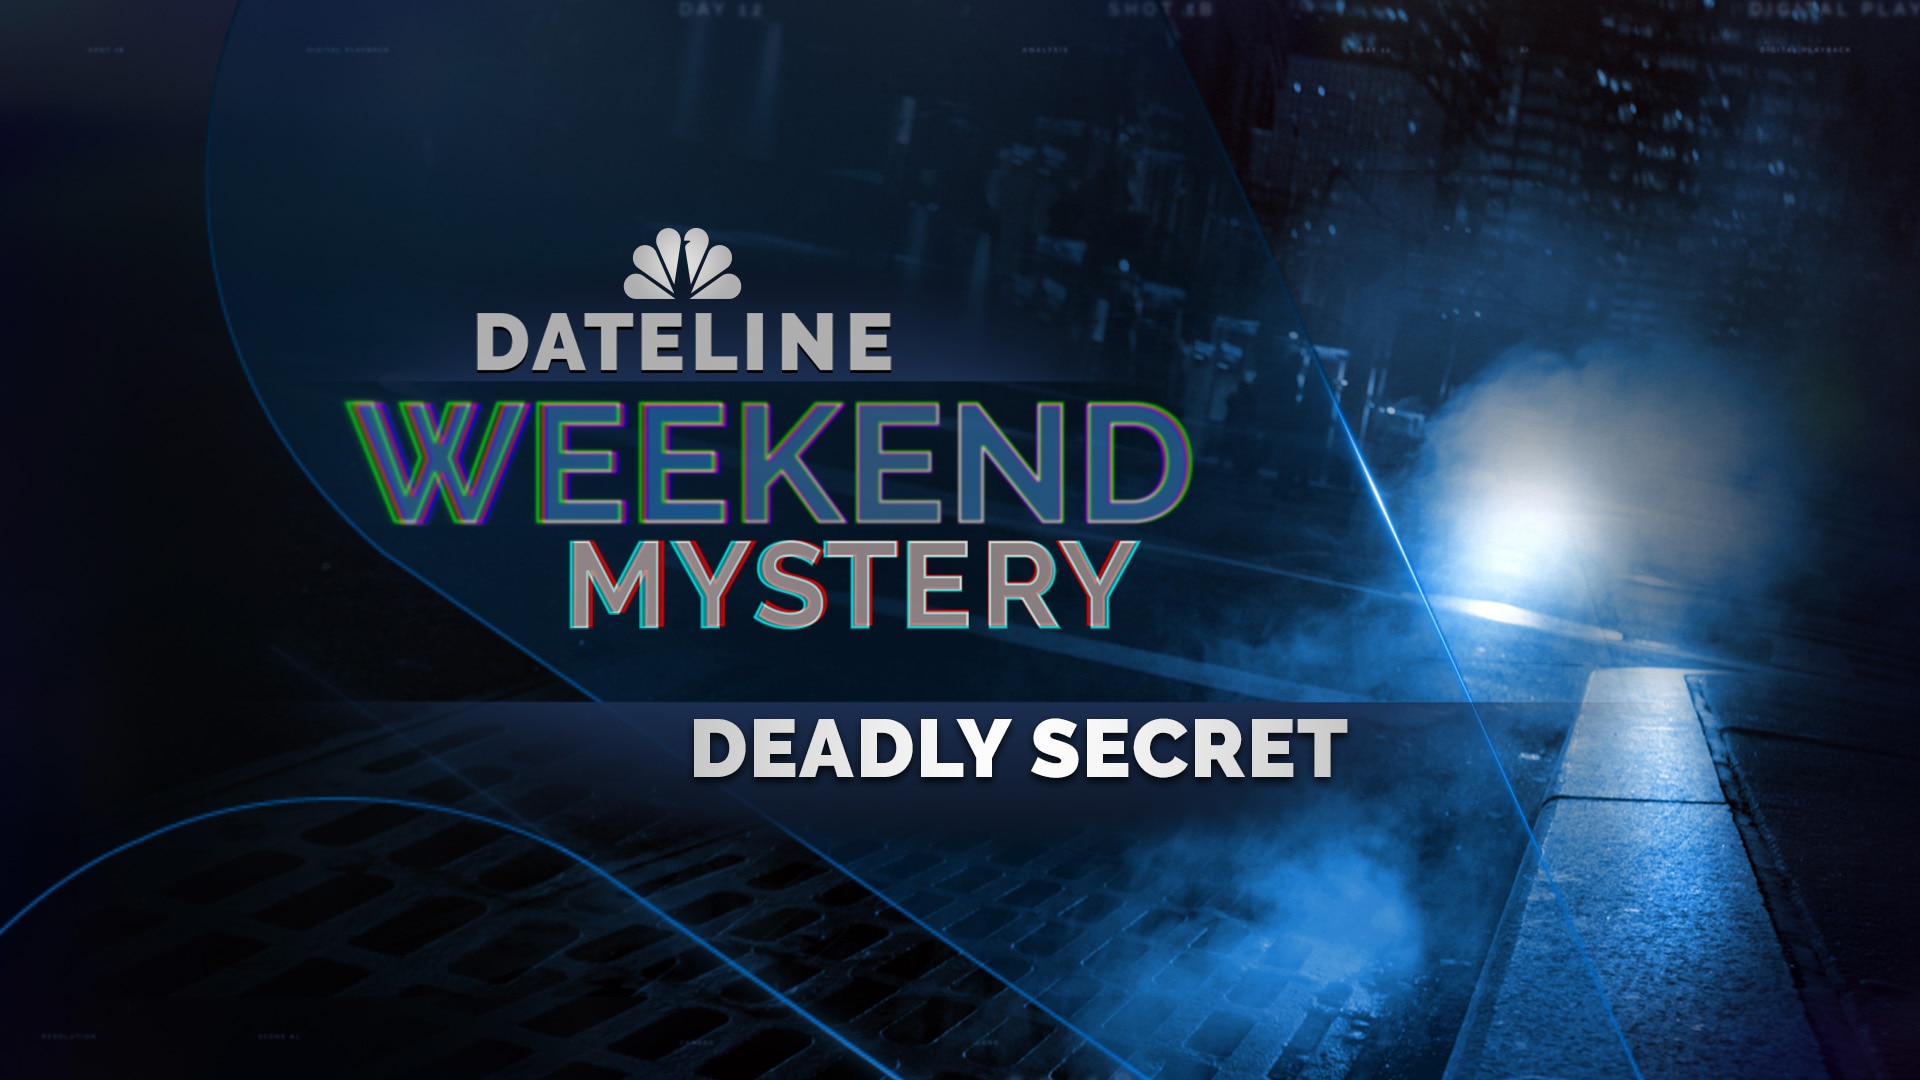 Watch Dateline Episode: Deadly Secret NBC com. www.nbc.com. 